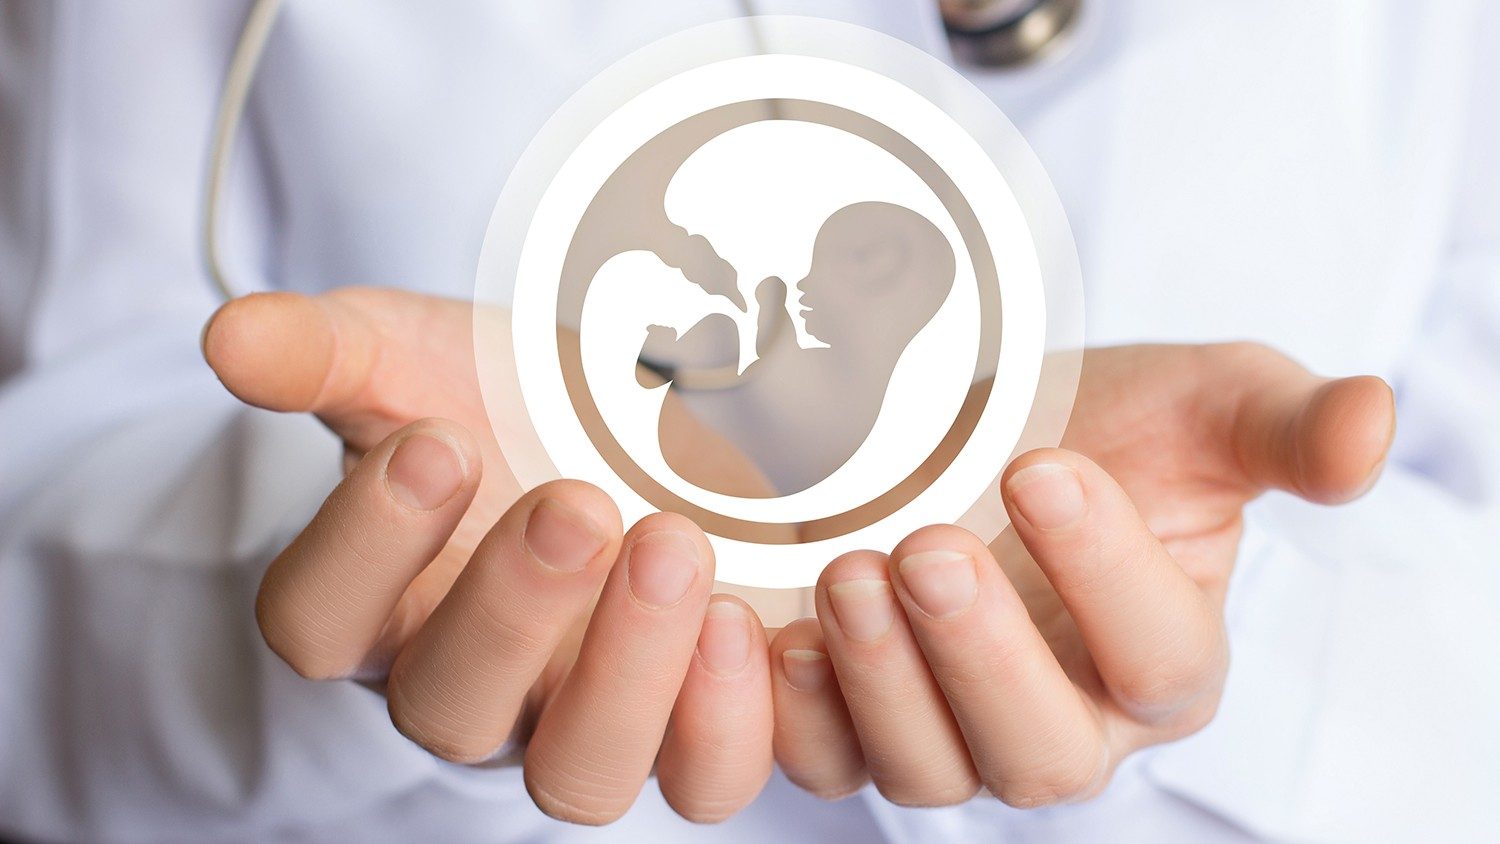  ‣ adn24 aosta | segnalazioni per pressioni in strutture sanitarie pubbliche contro l'aborto